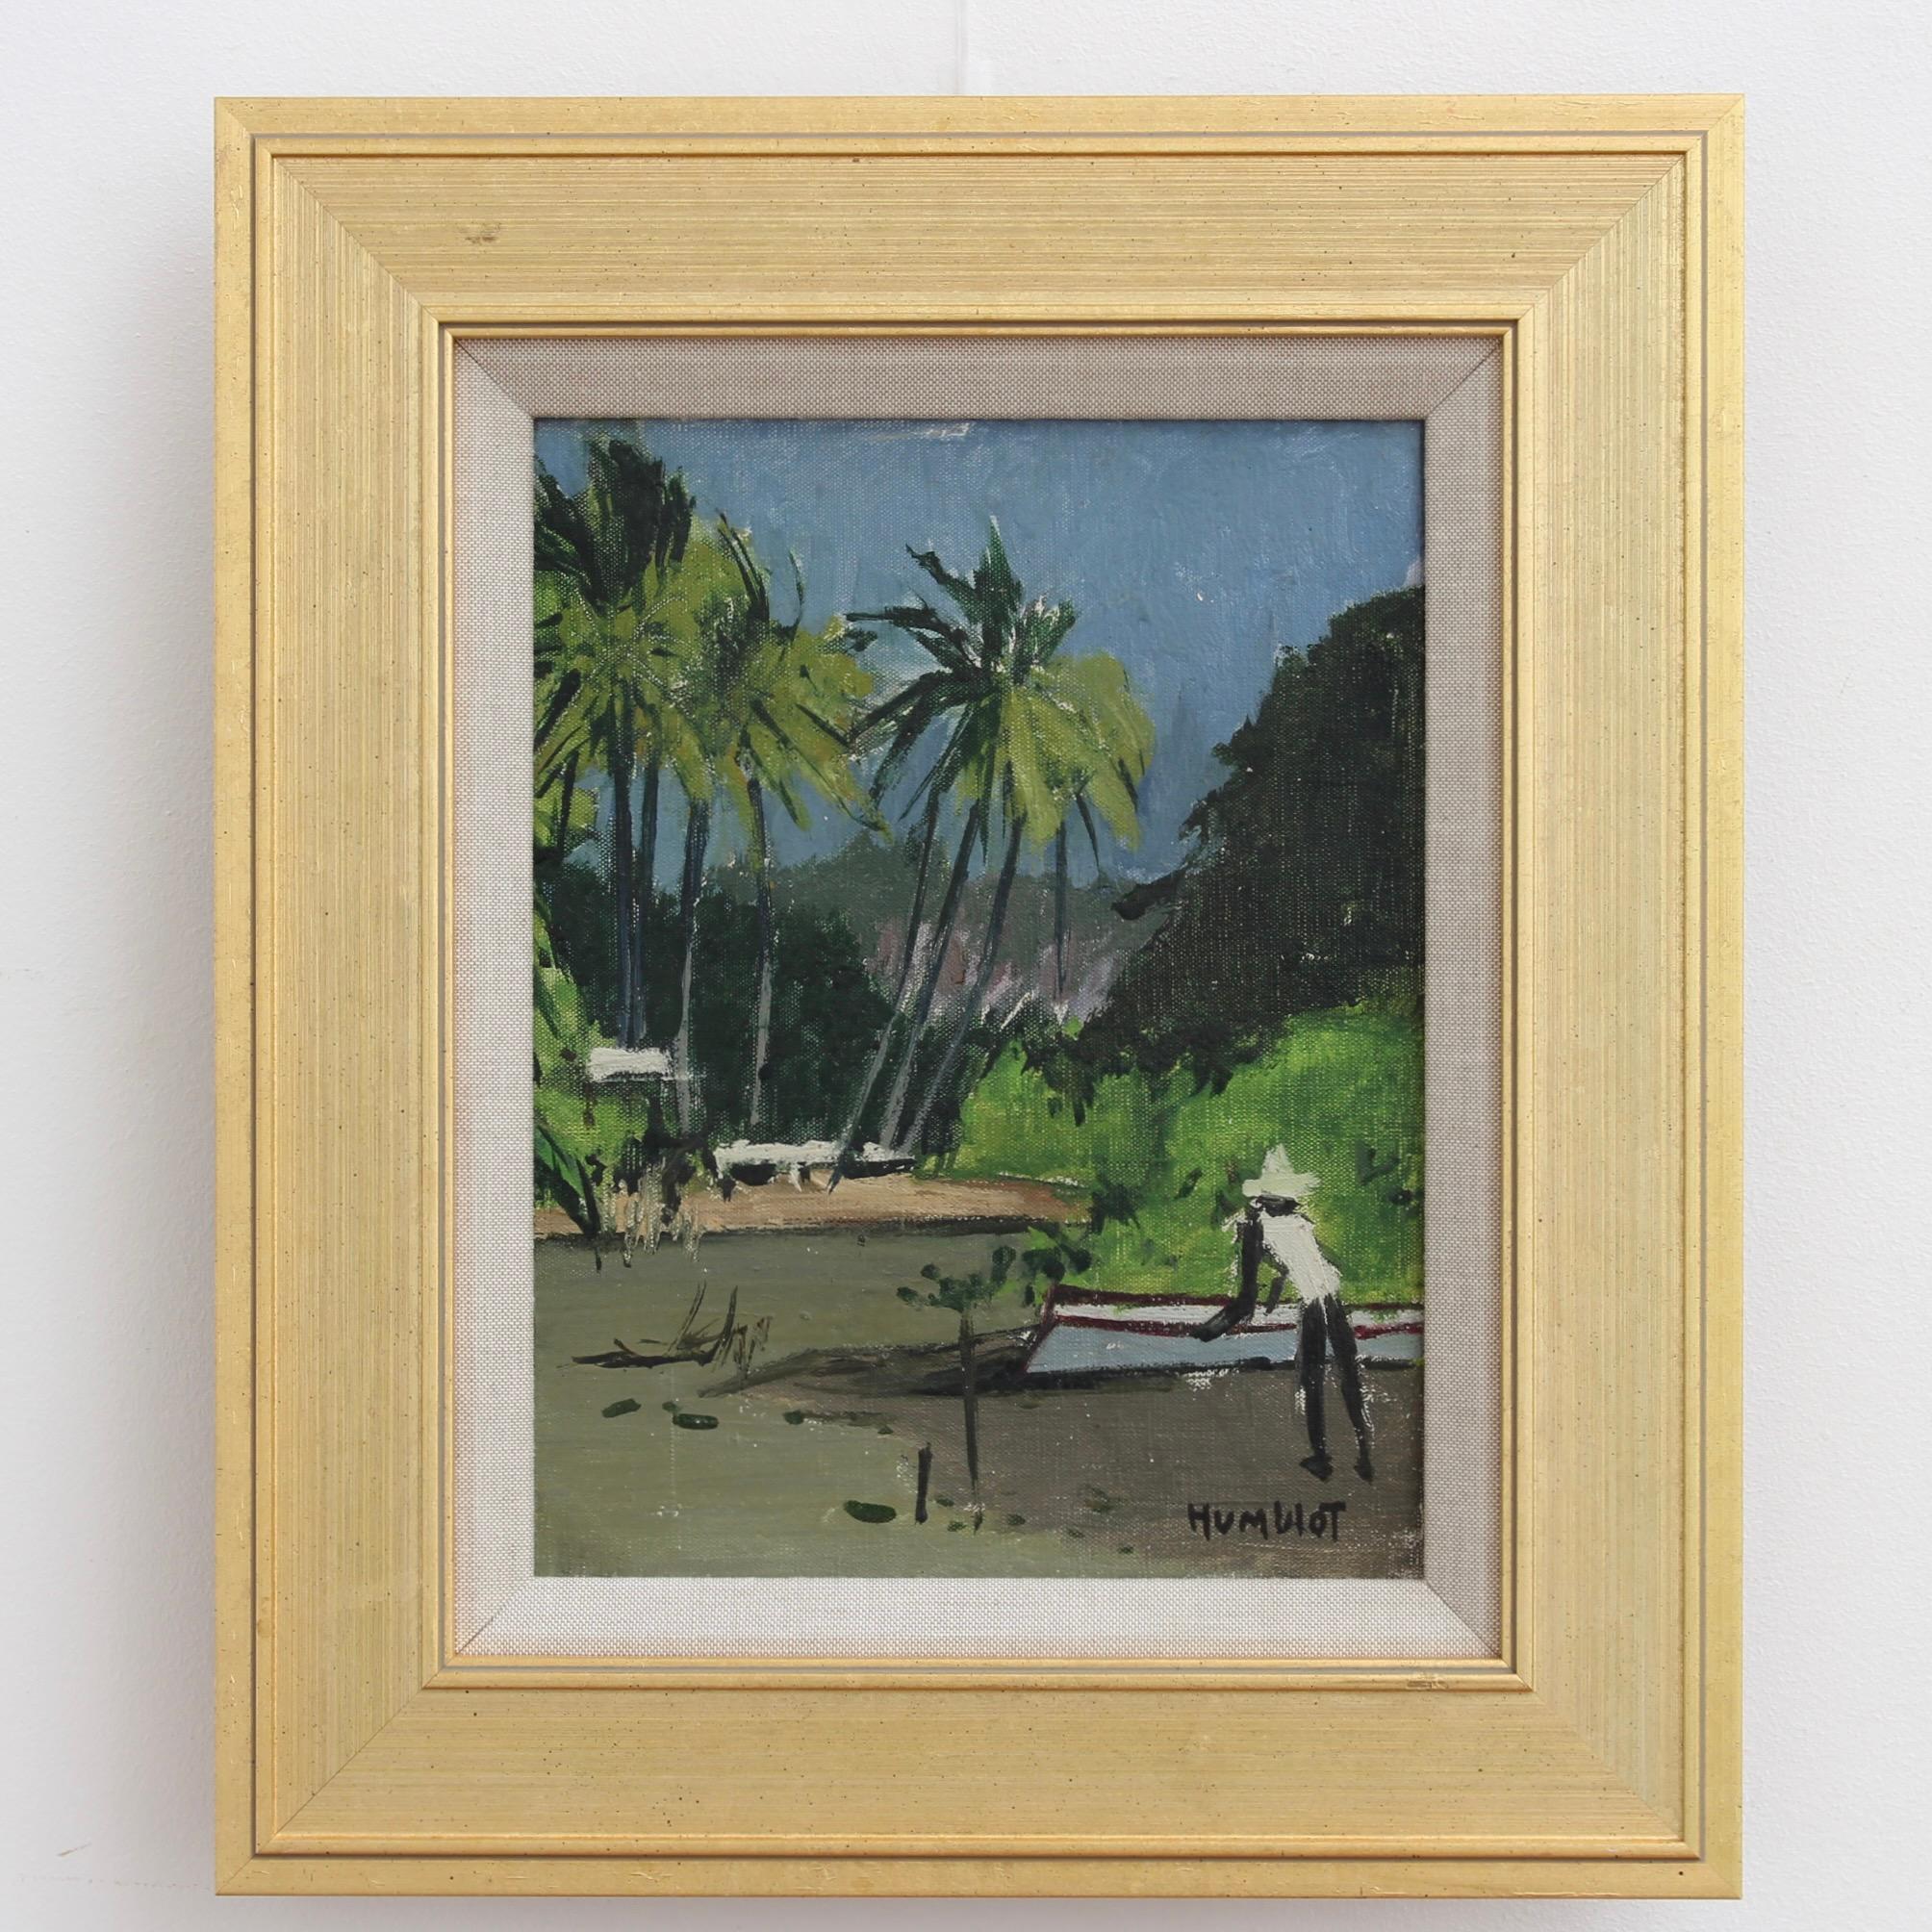 crépuscule sur le lagon de Schoelcher, Martinique, huile sur toile, par Robert Humblot (1959). La troisième d'une série d'œuvres d'art réalisées en 1959 lorsque l'artiste a visité les Antilles françaises. Il a peint plusieurs œuvres colorées